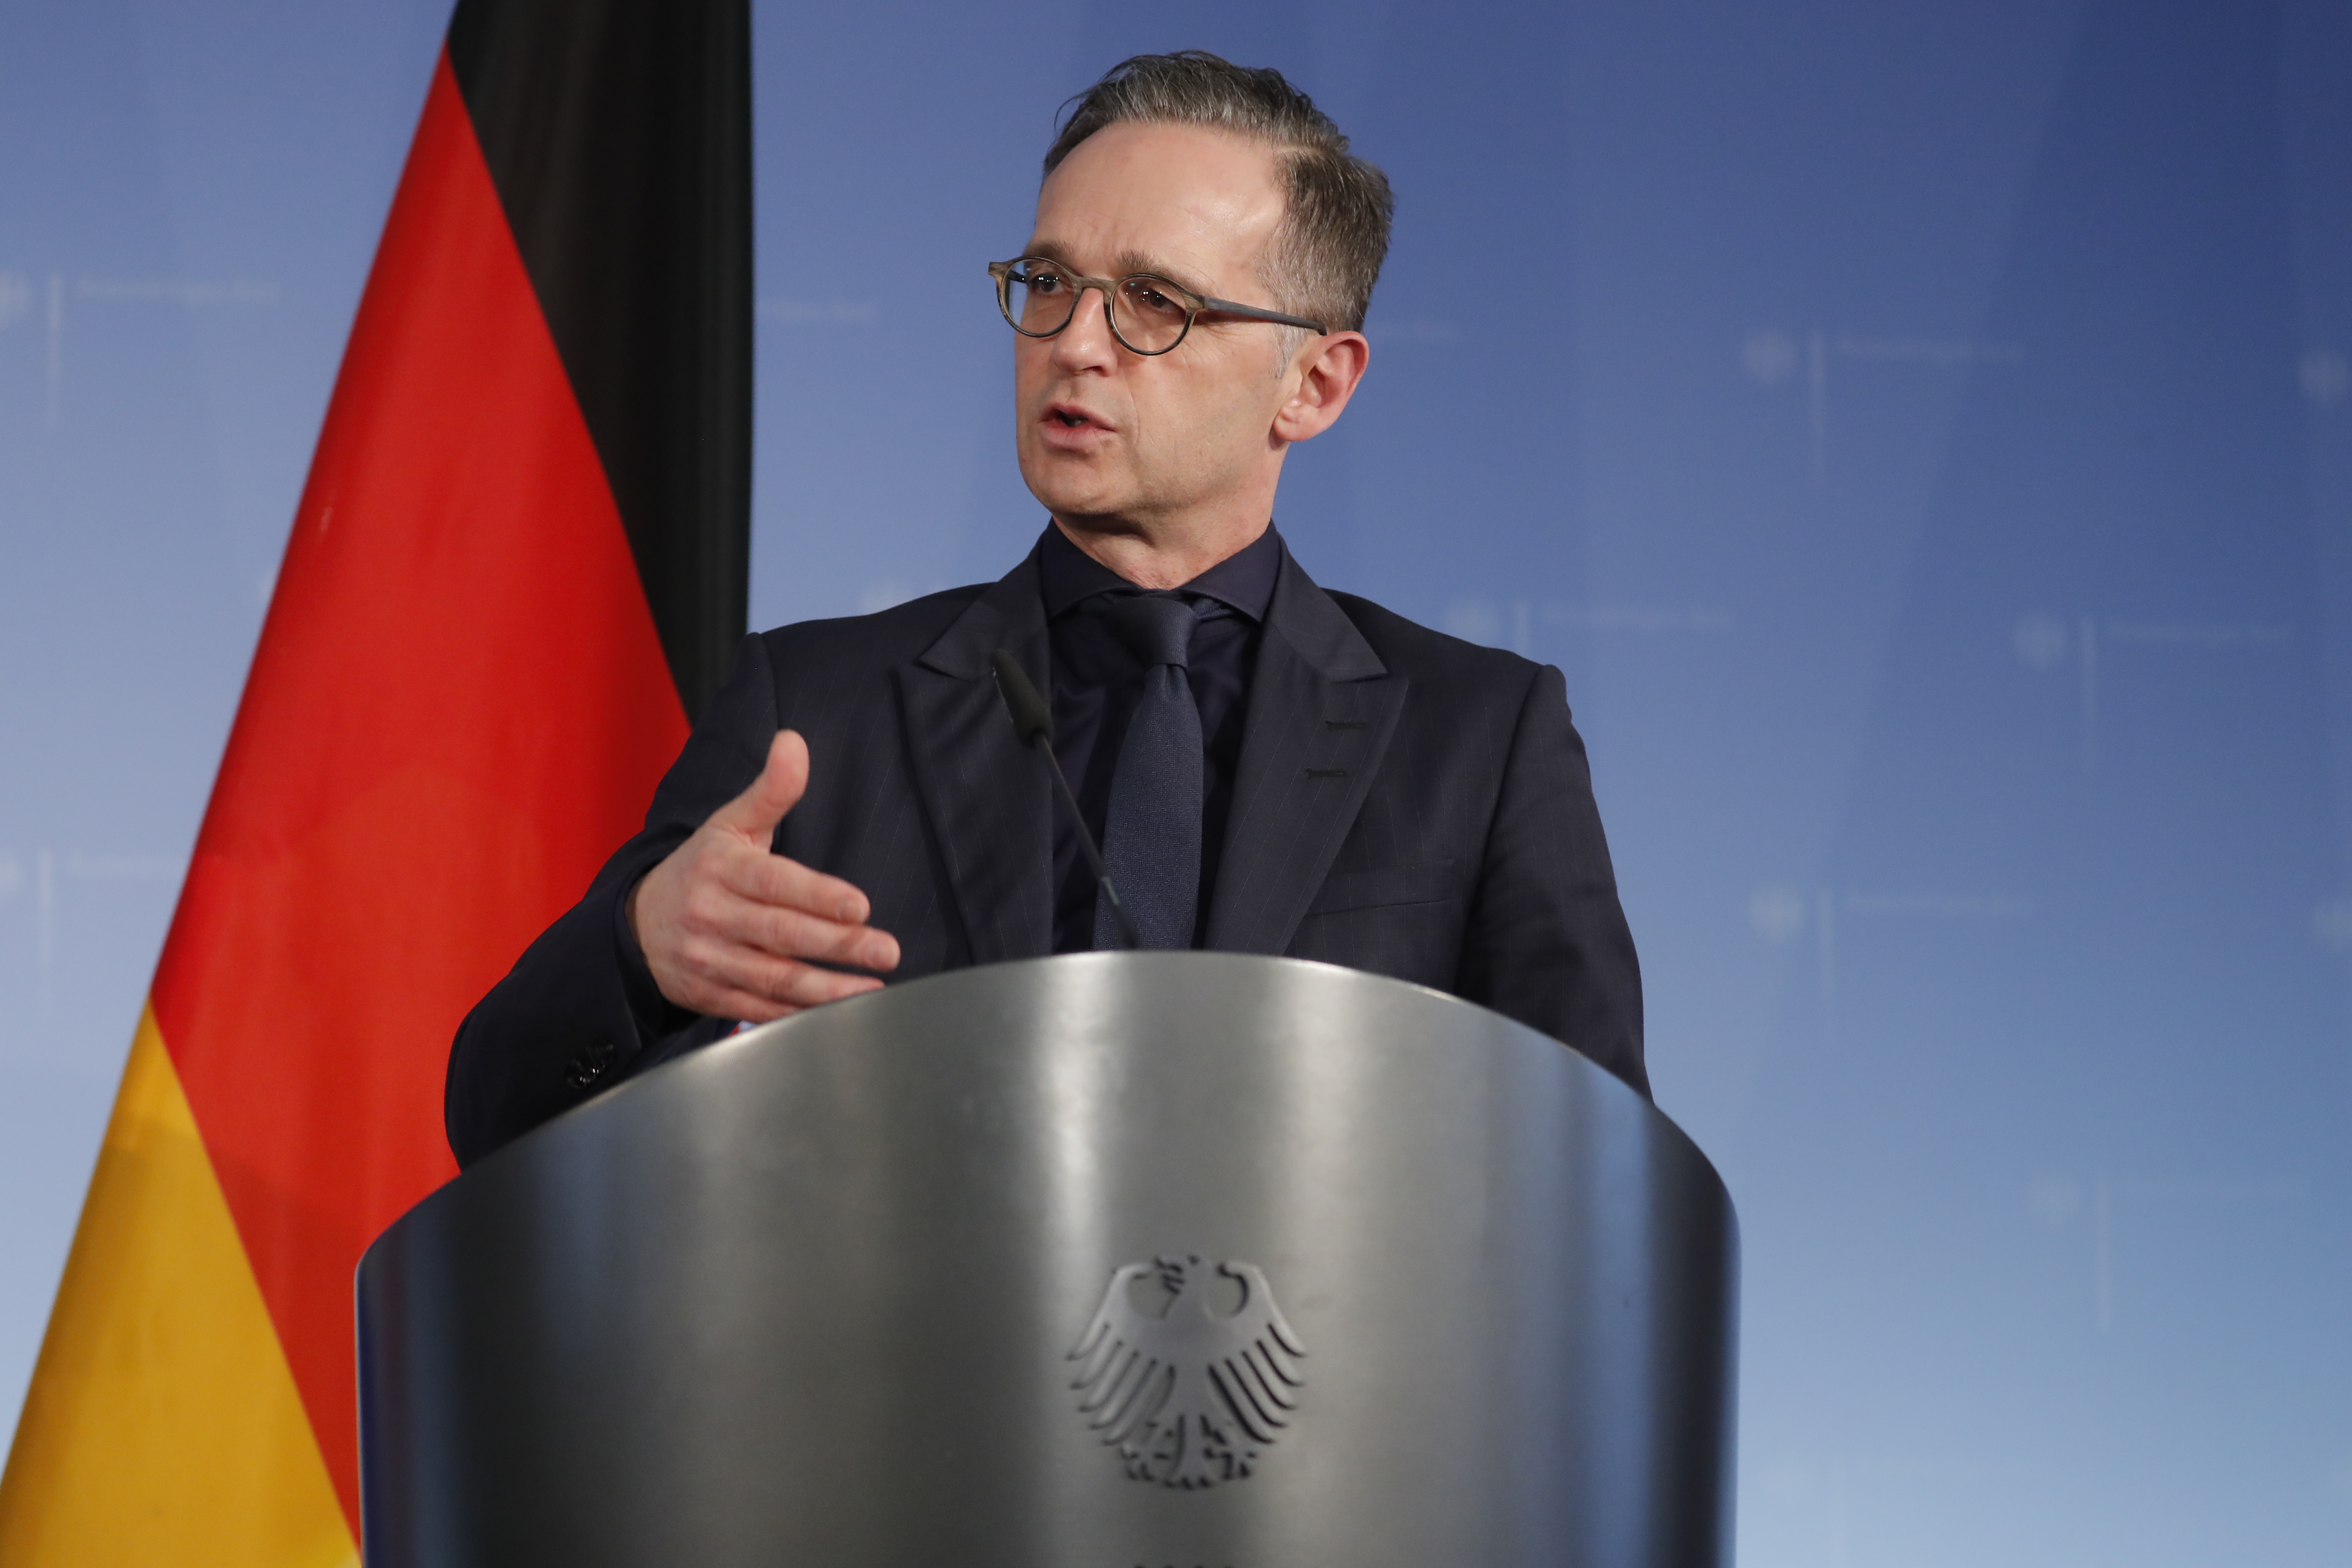 A német külügyminiszter figyelmeztetett, hogy aki korlátozza a jogállamiságot, ne annyira számítson az EU pénzügyi előnyeire